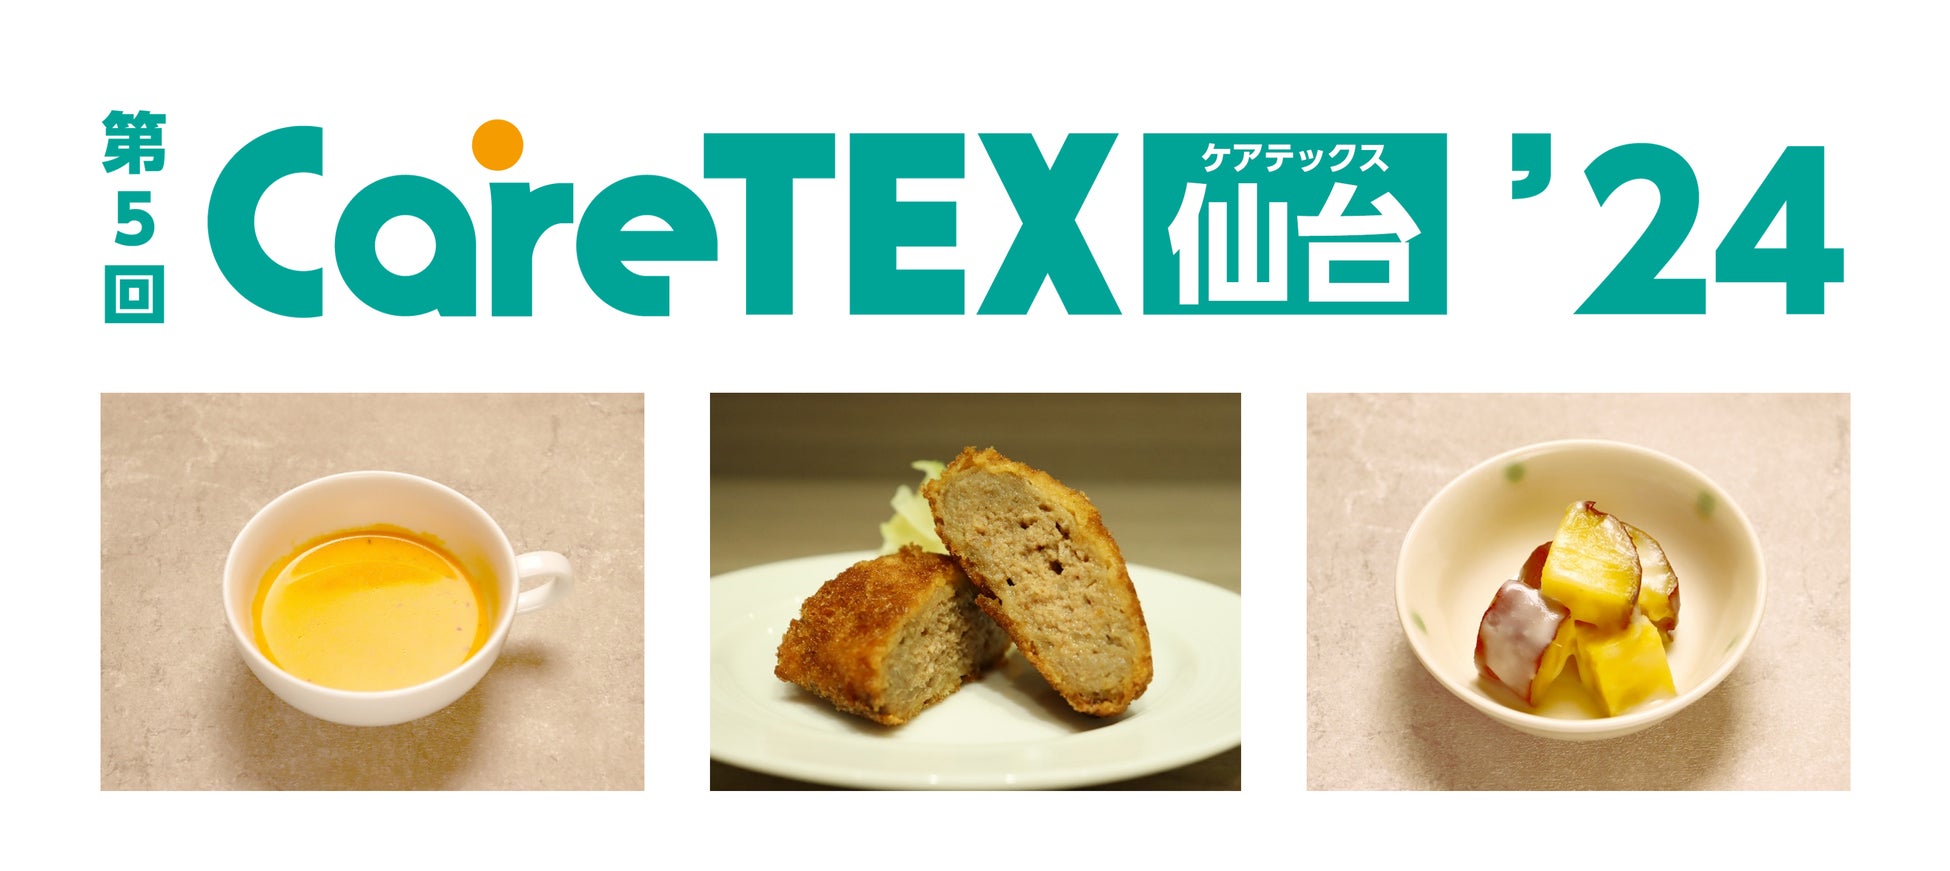 第5回CareTEX仙台’24内「ケアフード展」にLEOCが出展　オペレーションサービス「LEOC Ready-made」をご提案